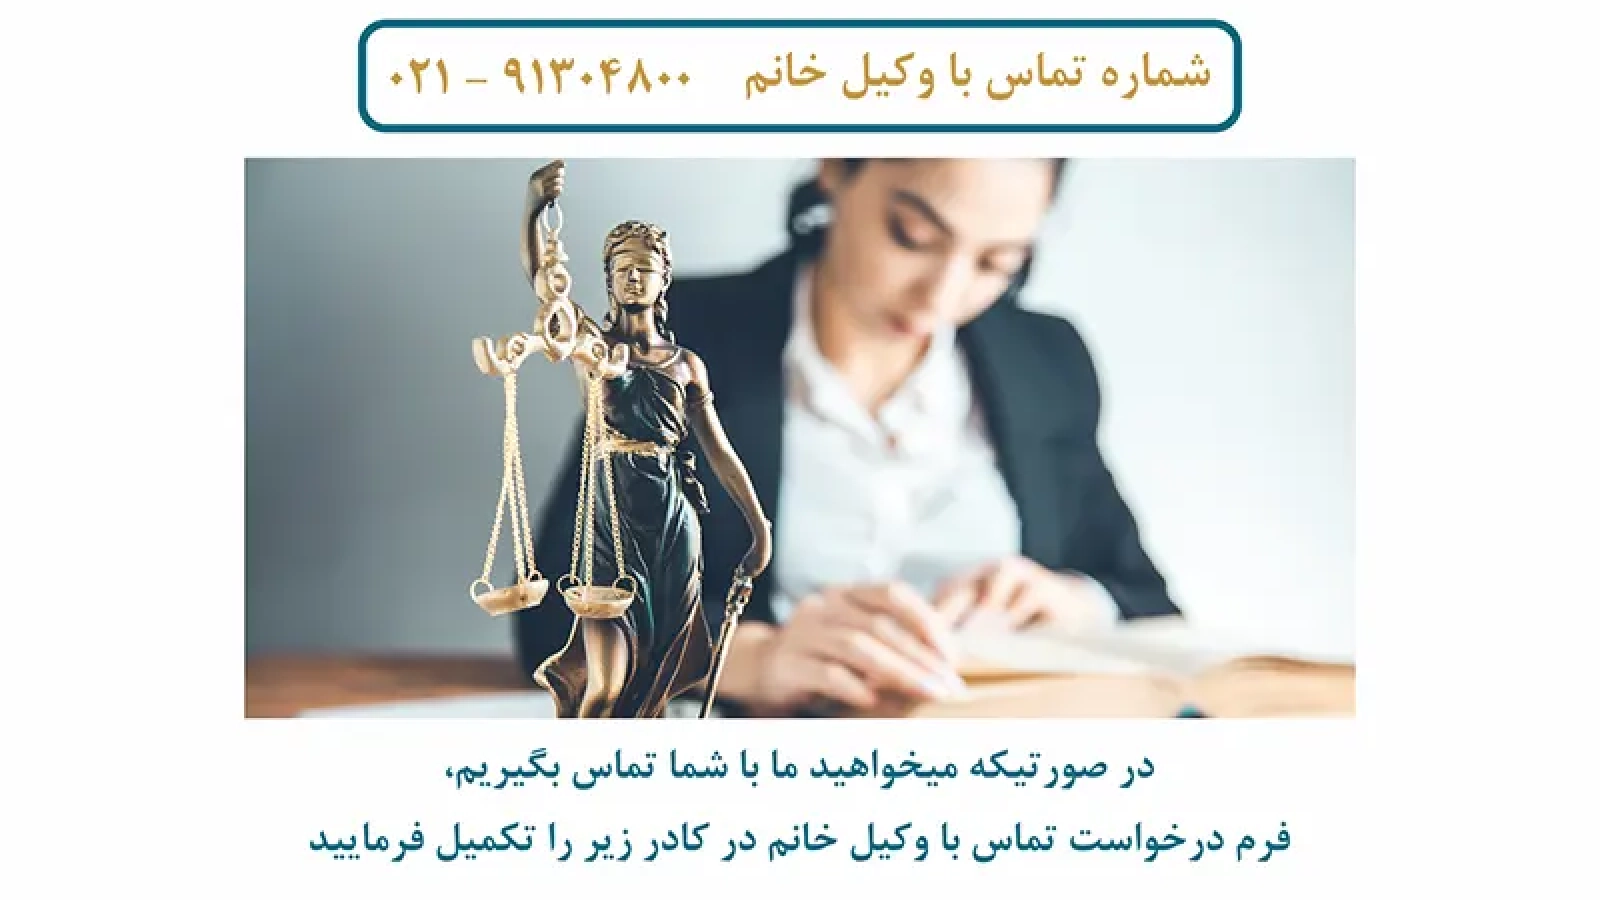 وکیل خانم در کشور ایران